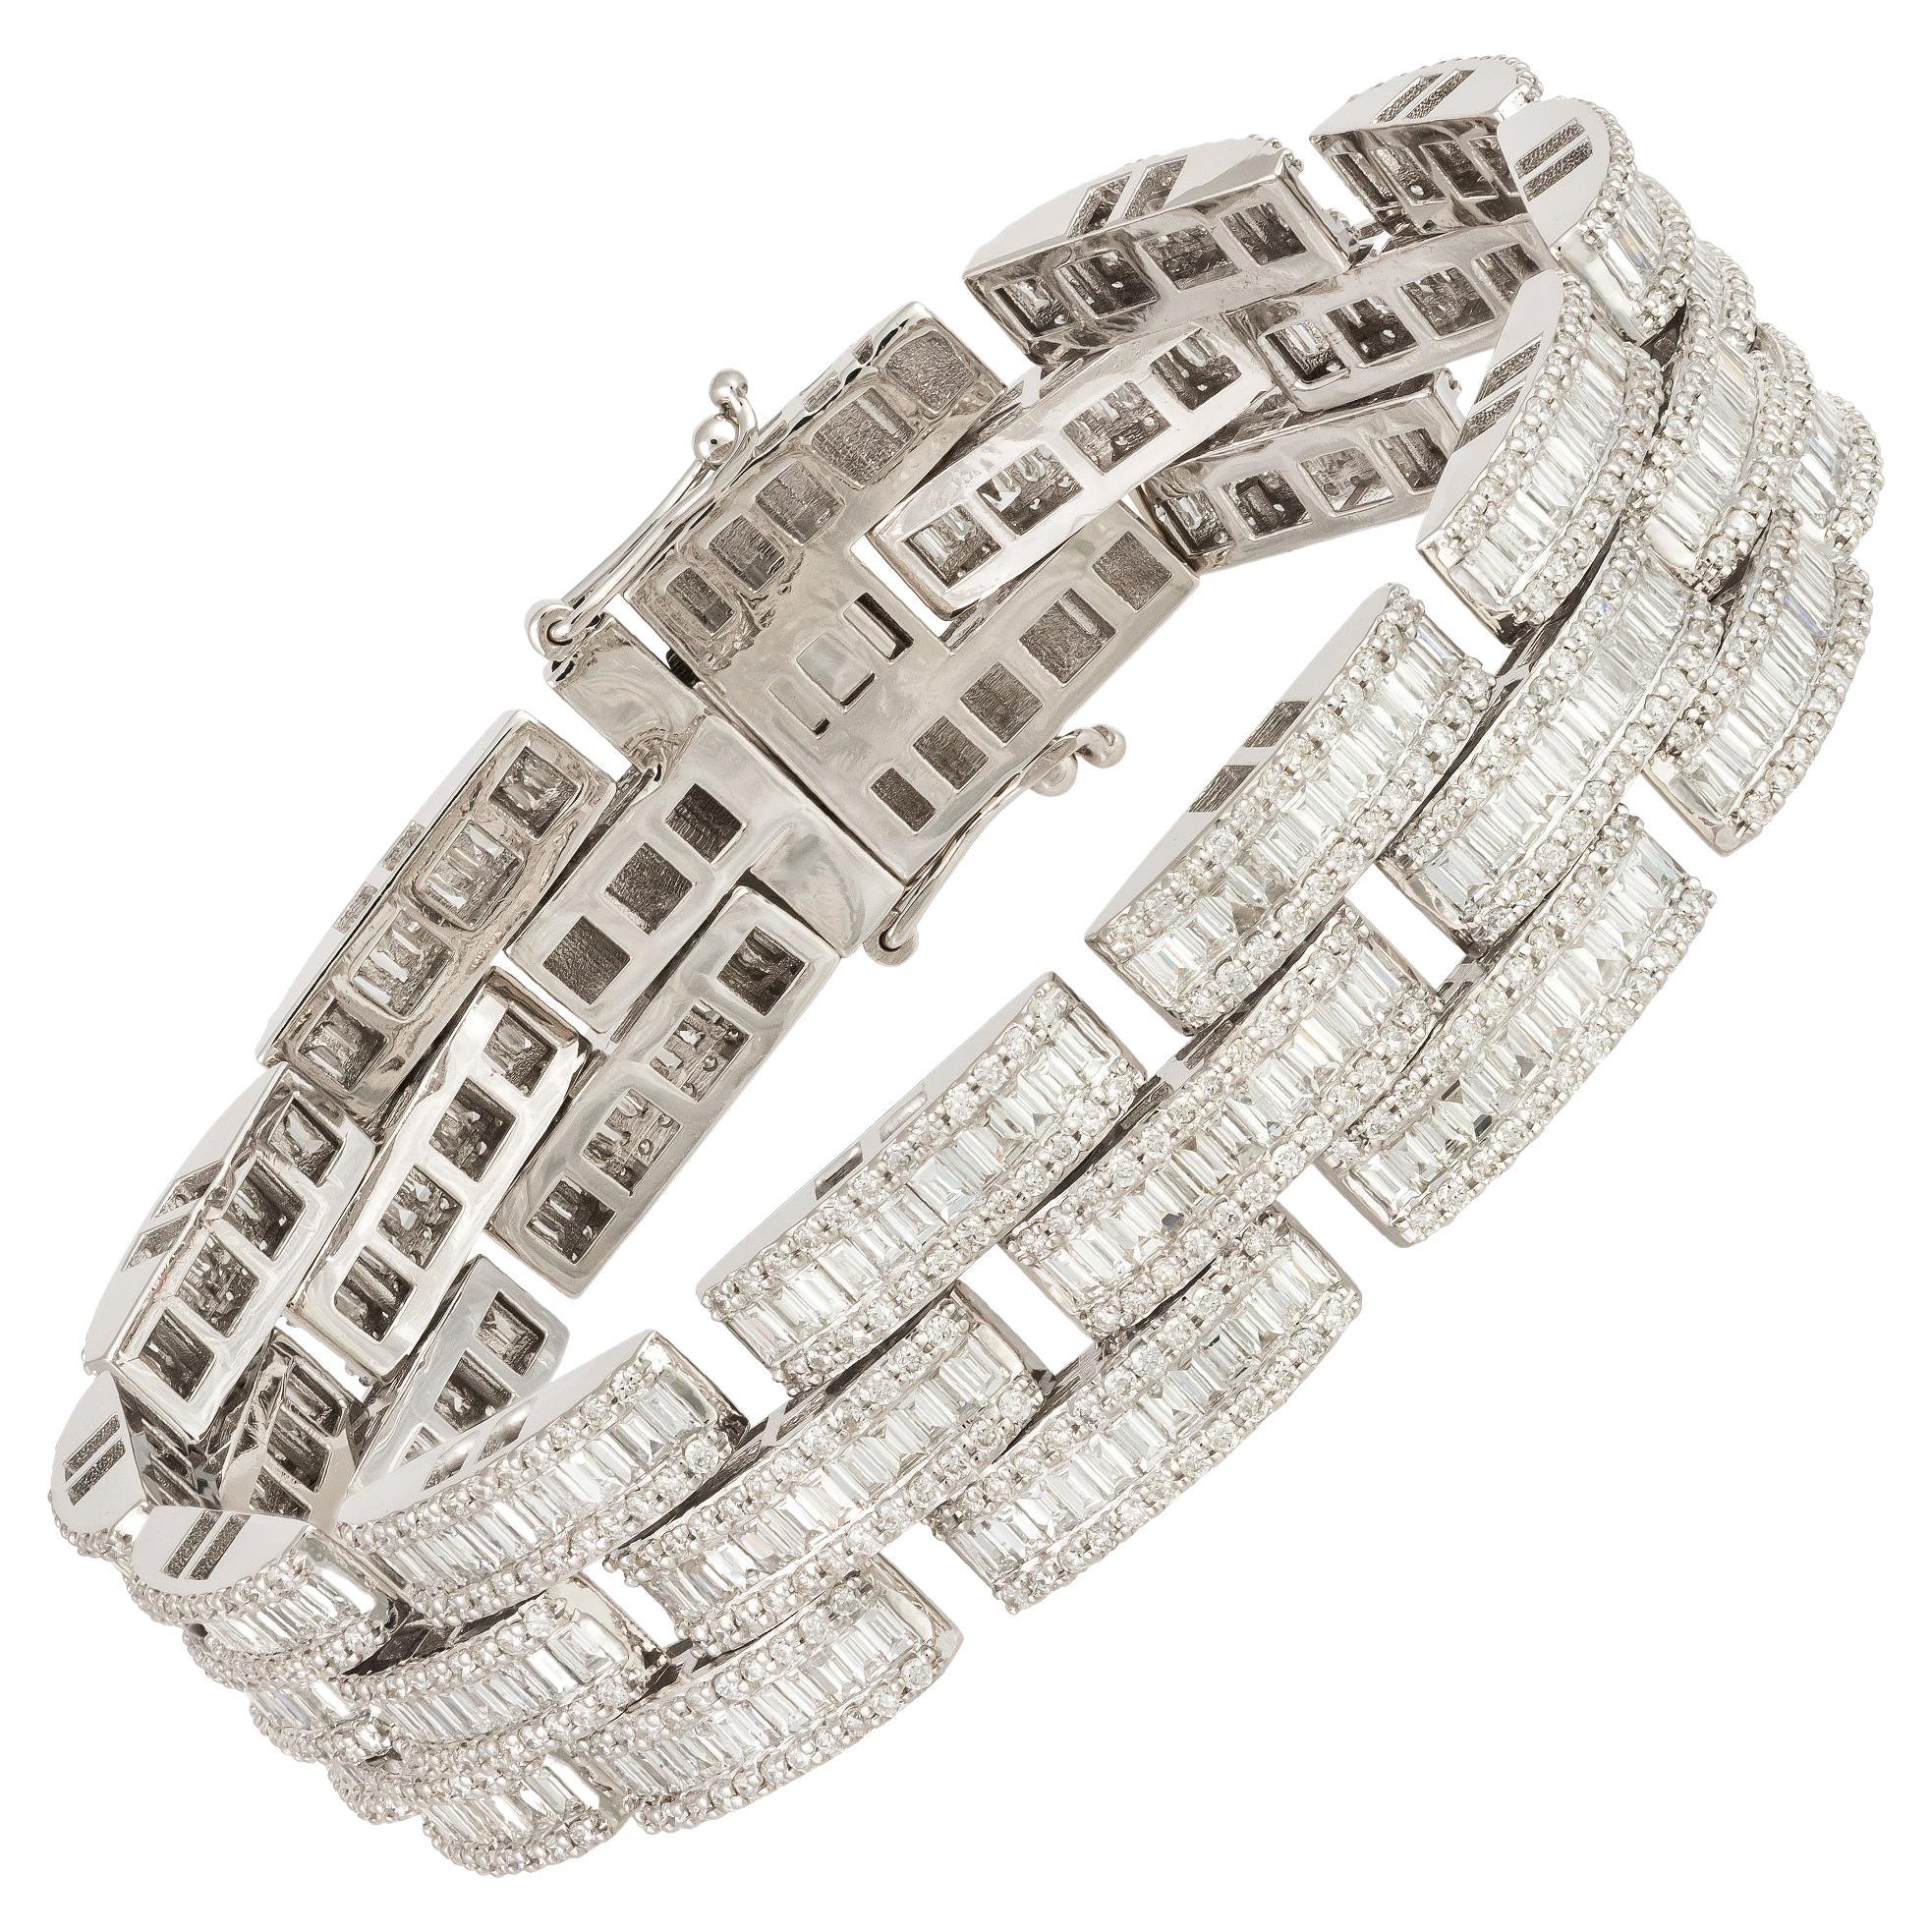 Chain Type Band White Gold 18K Bracelet Diamond for Her